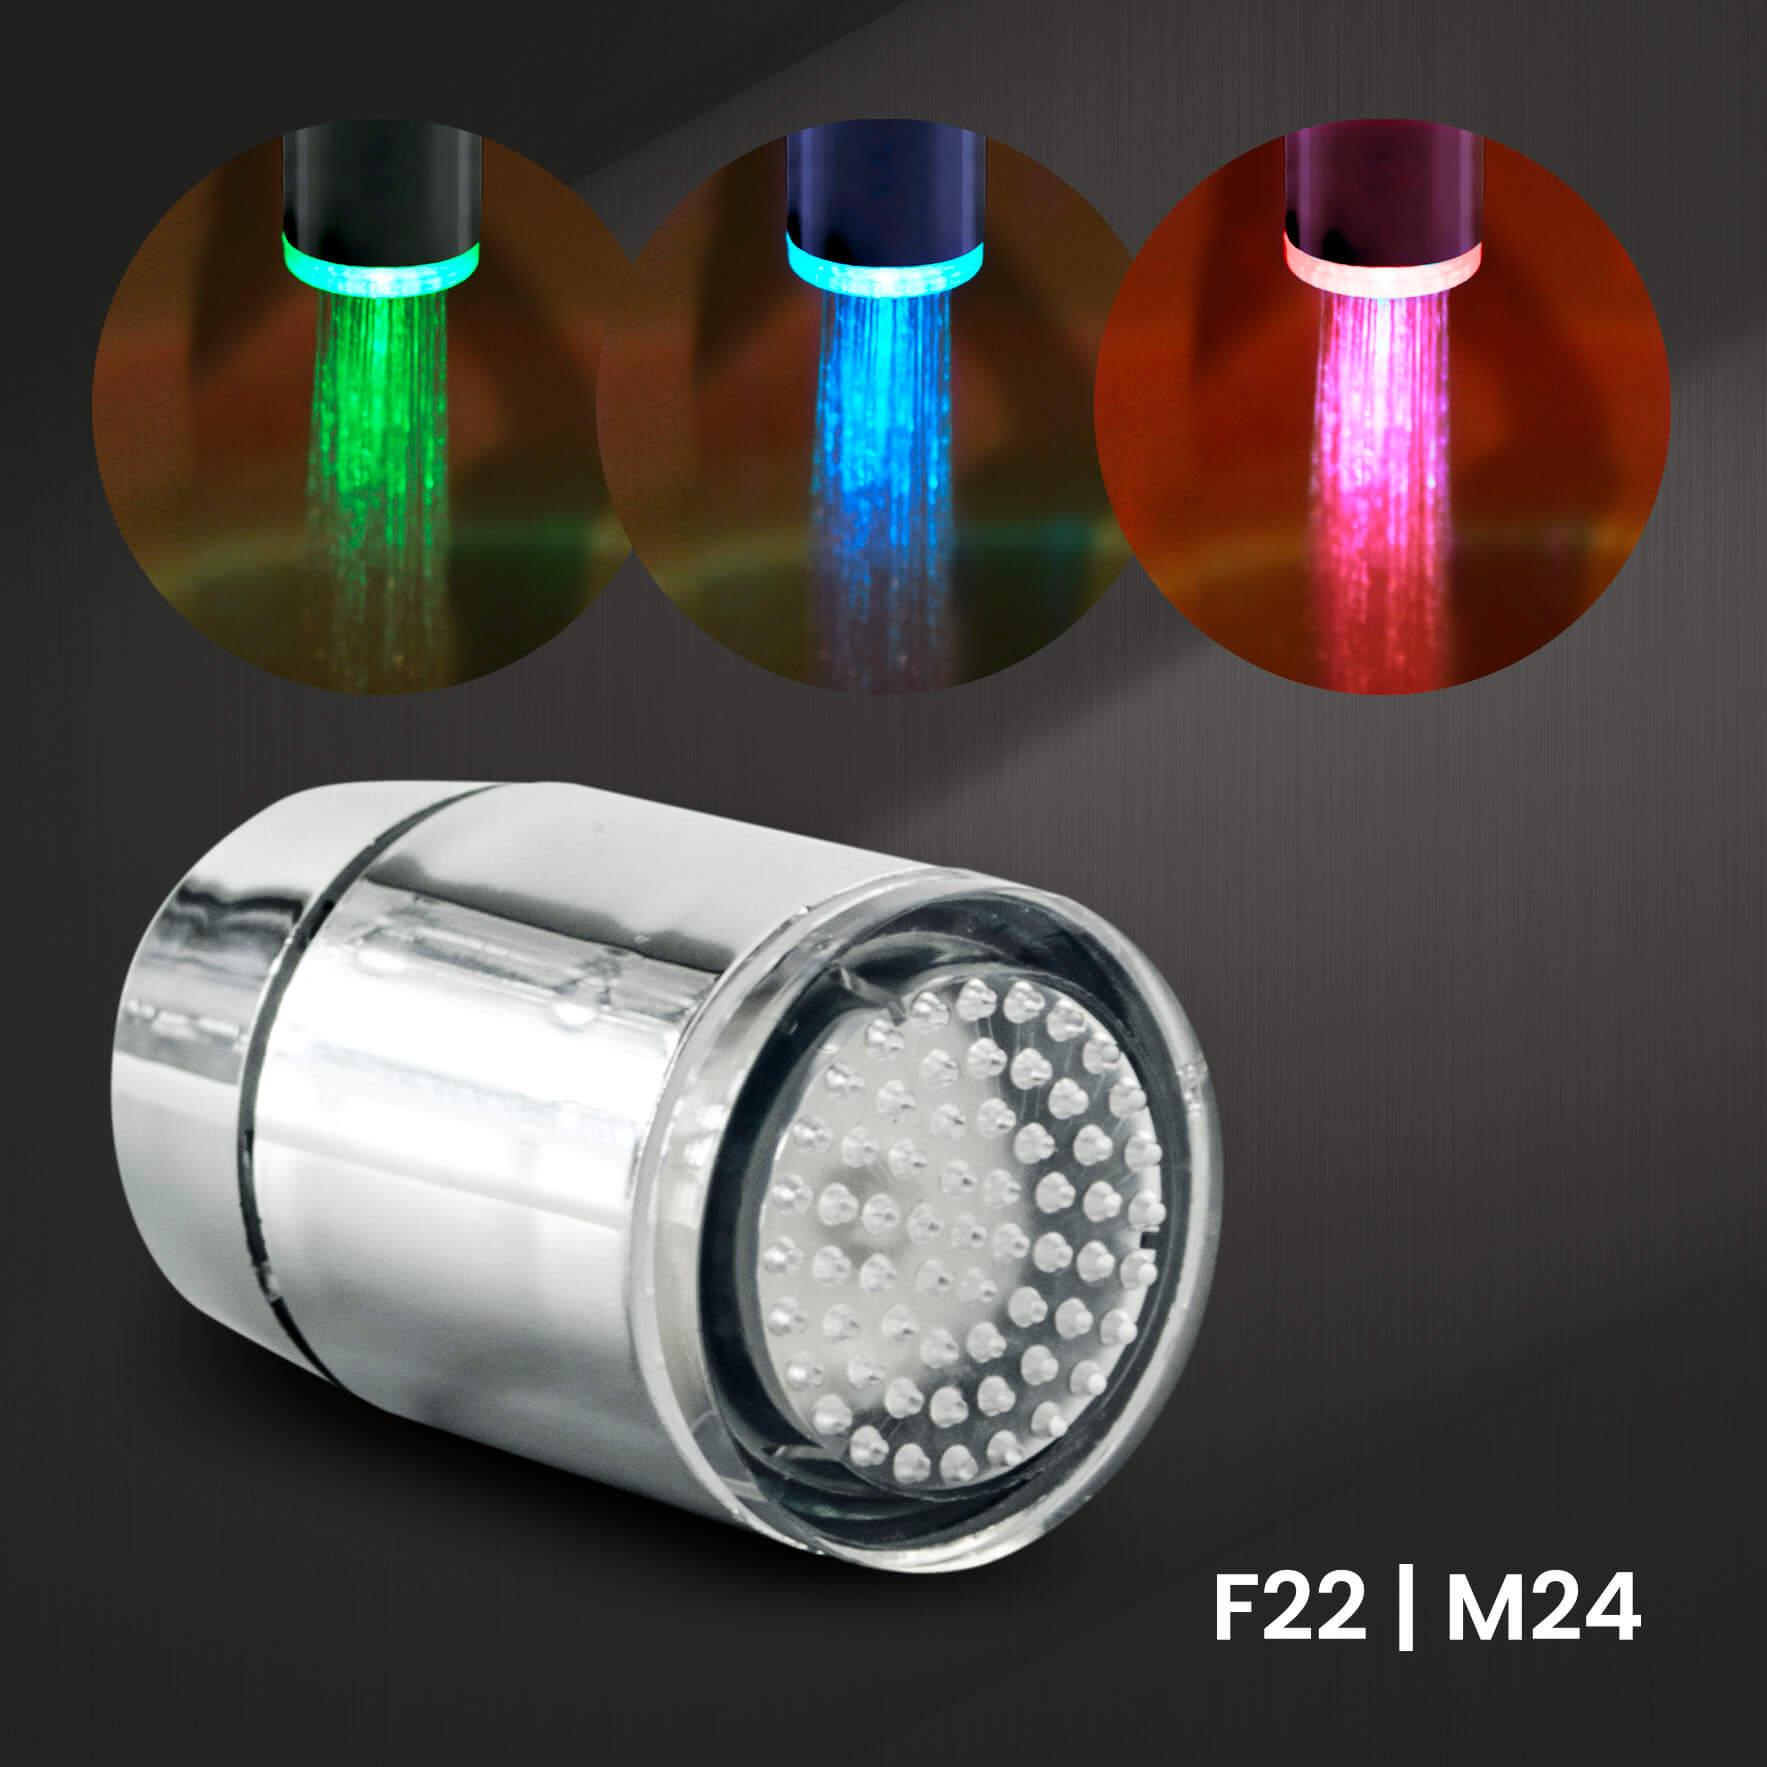 LED Wasserhahnaufsatz 2er-Set, Automatische Aktivierung, Farbwechsel bei Wassertemperatur, F22/M24, von X4-TOOLS